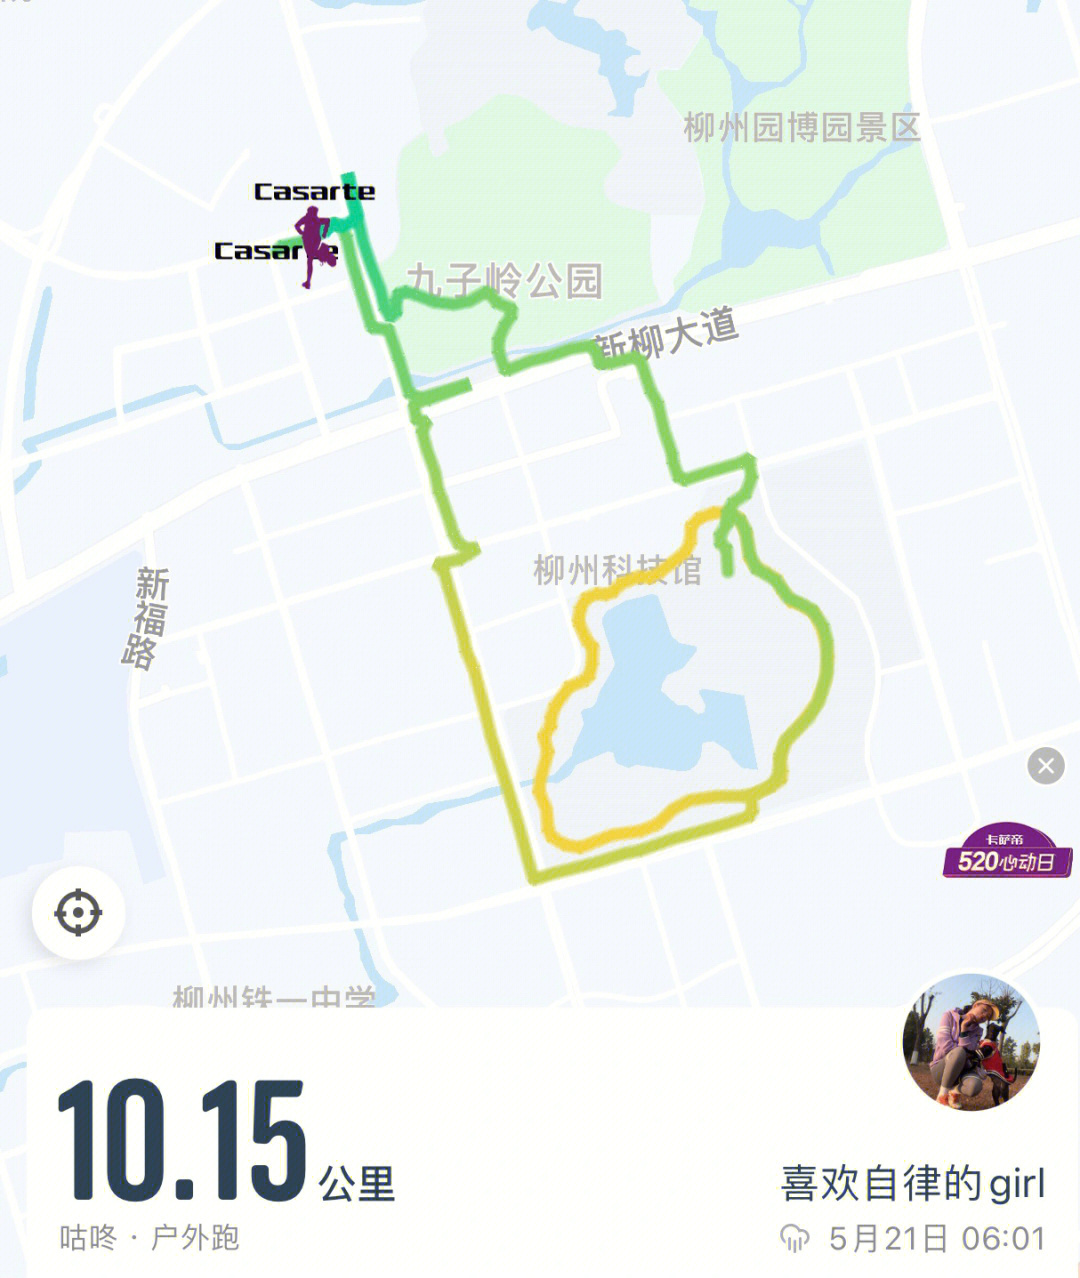 柳州龙湖公园第一次跑步打卡